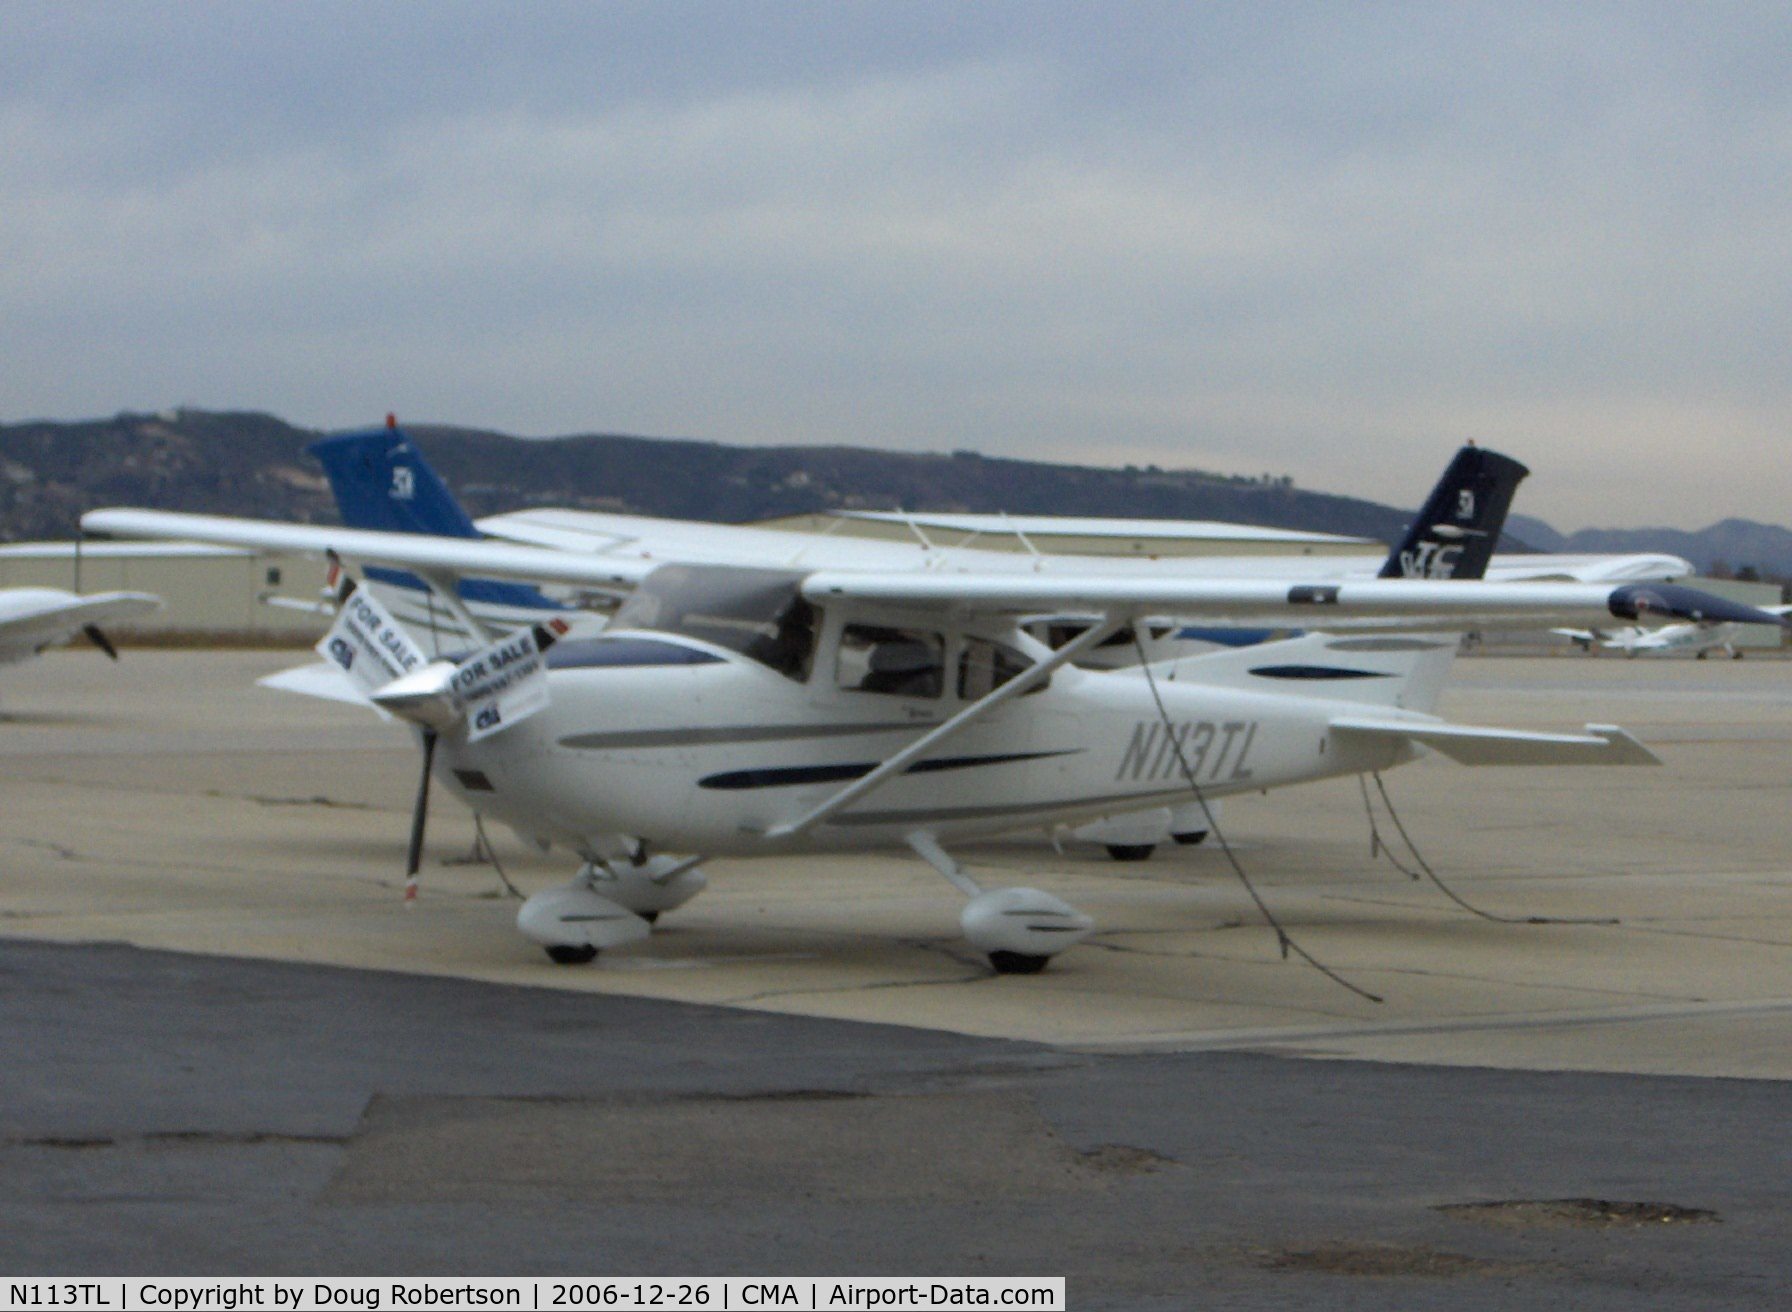 N113TL, 2003 Cessna T182T Turbo Skylane C/N T18208219, 2003 Cessna T182T TURBO SKYLANE TC, Lycoming TIO-540-AK1A 235 Hp, tri-blade CS prop